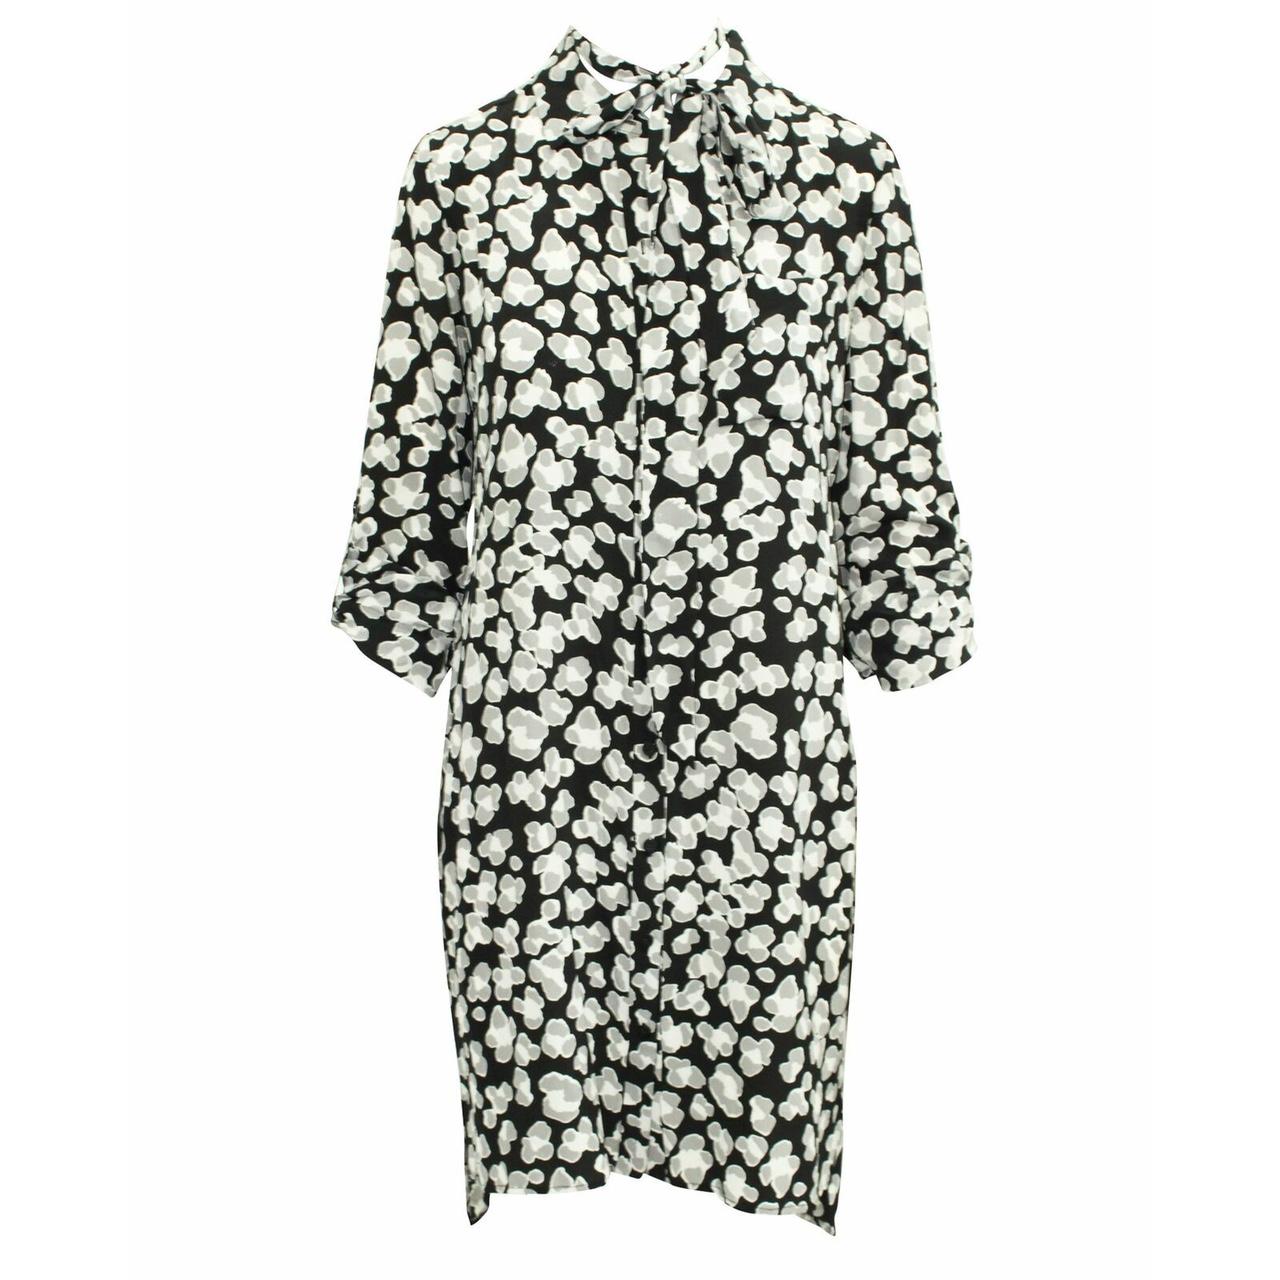 Diane von Furstenberg Silk Popcorn Shirt Dress. US 8... - Depop